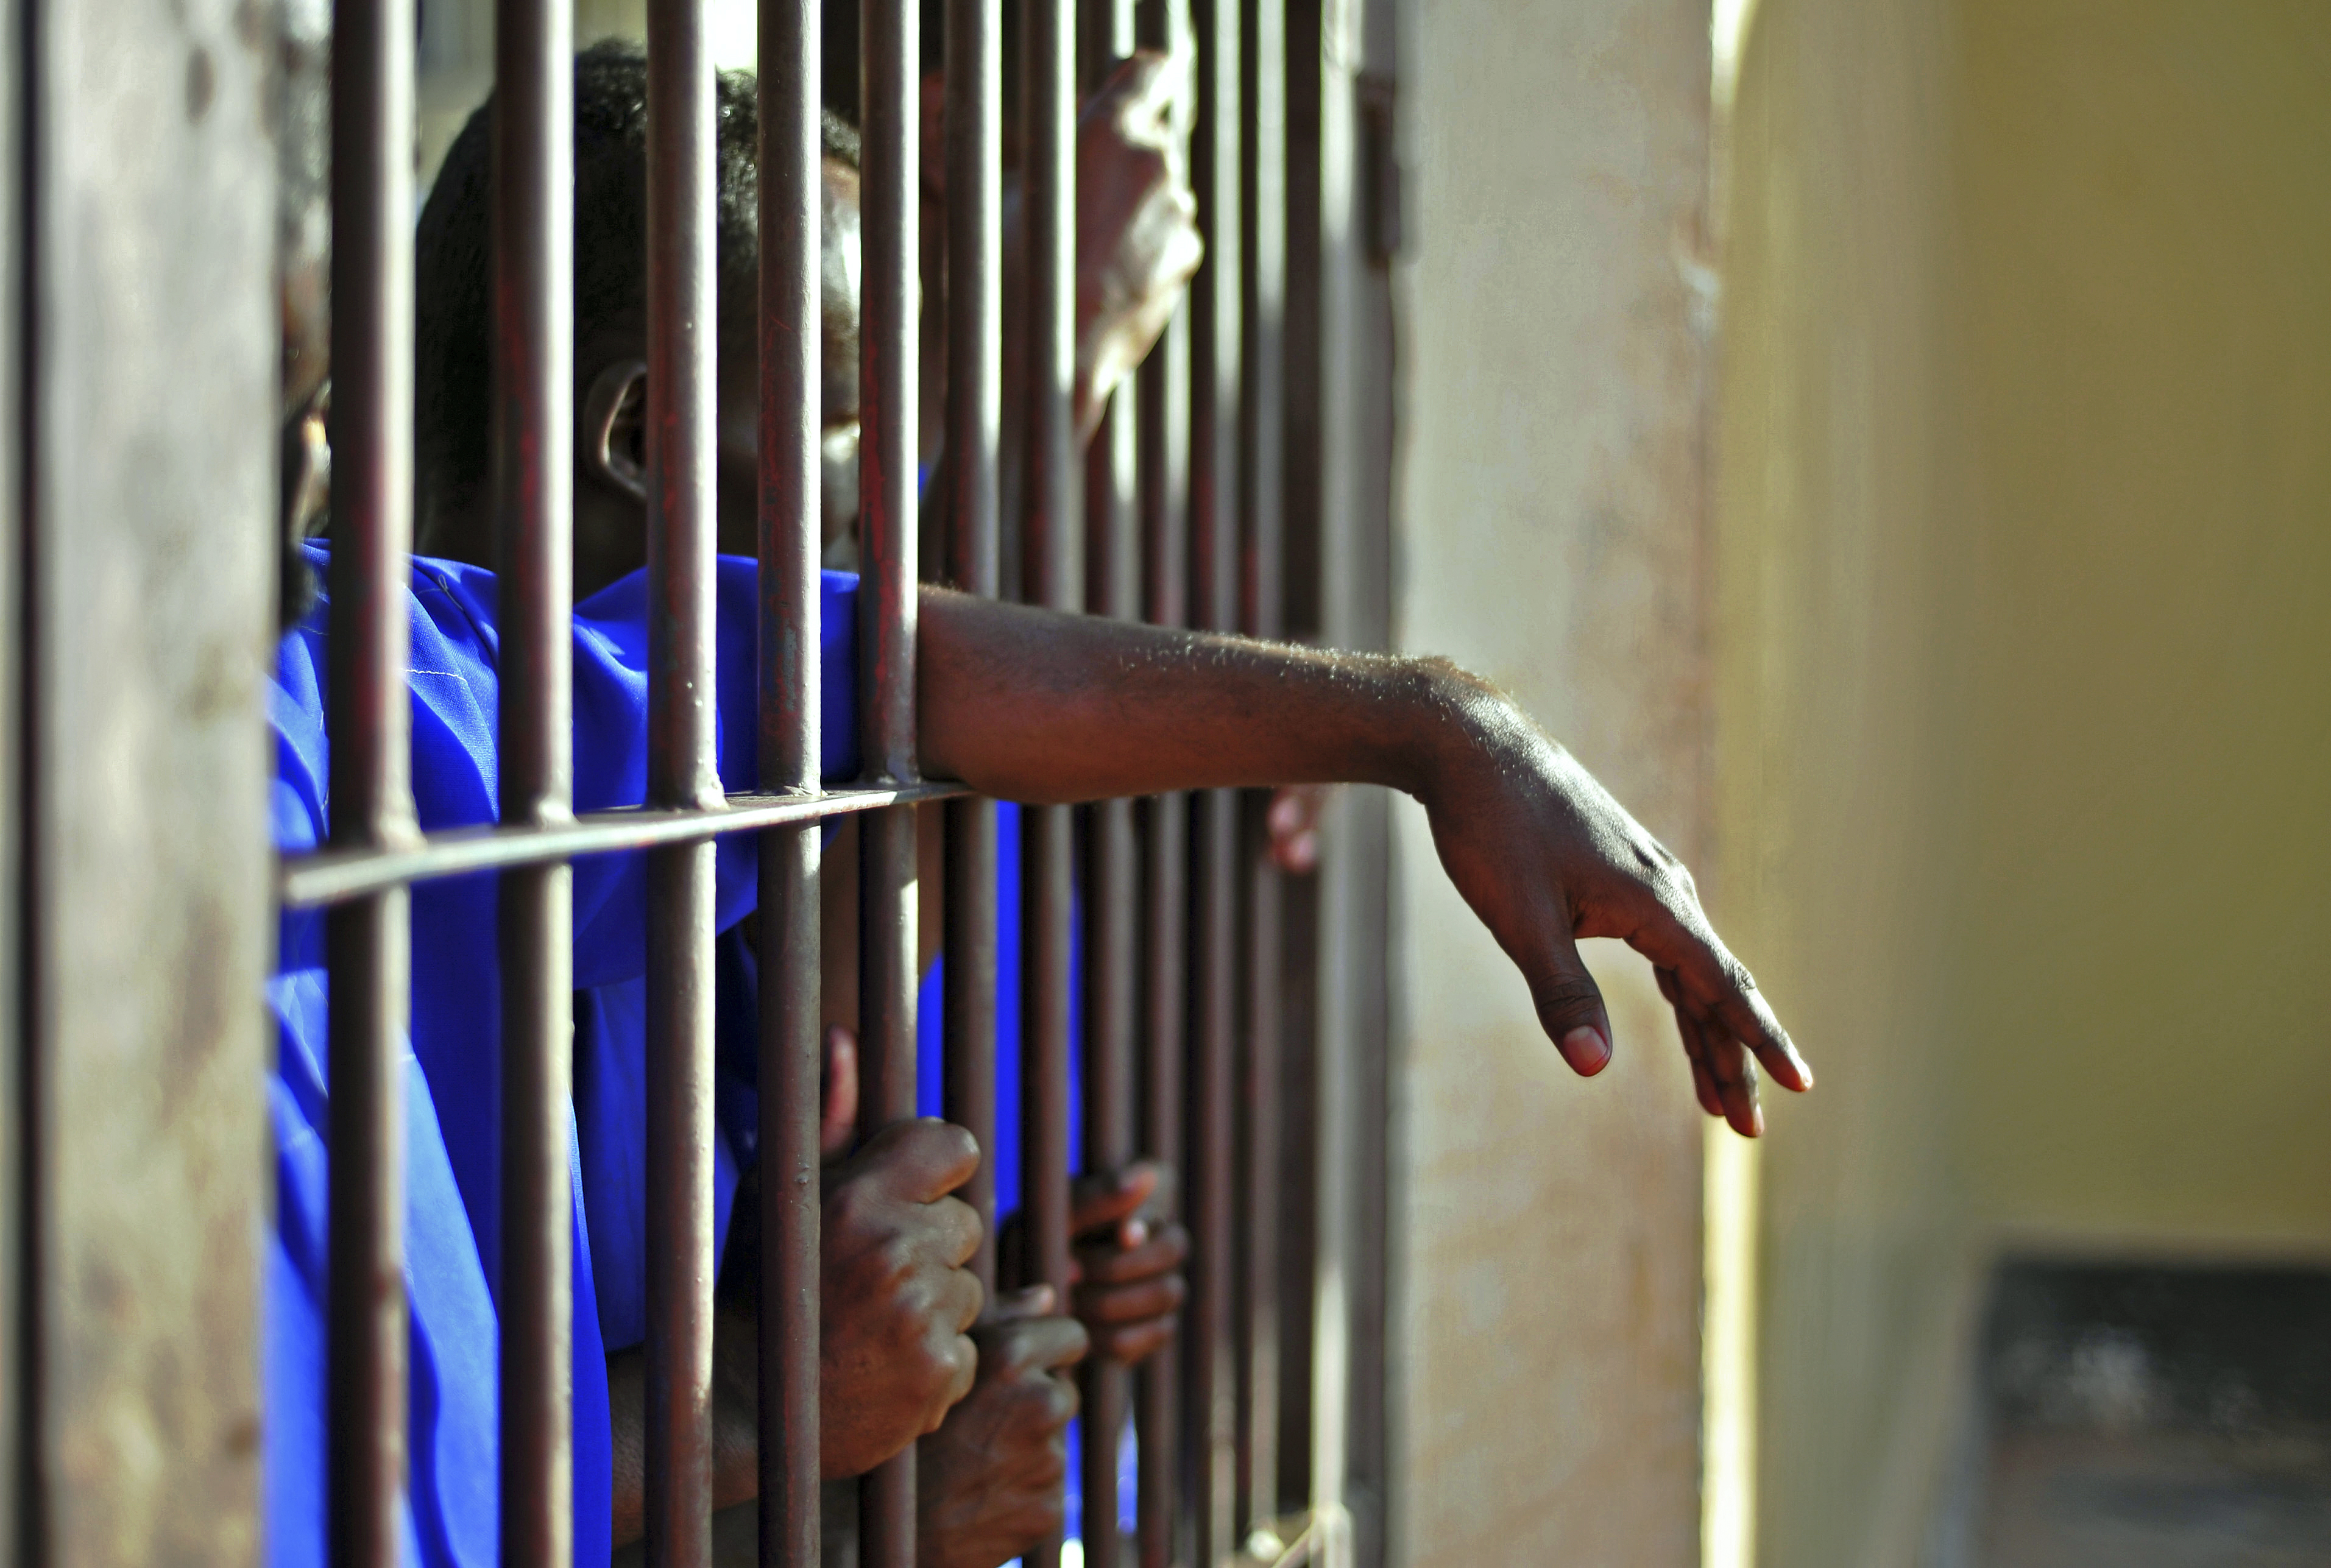 SOMALIA-PRISON-PIRACY